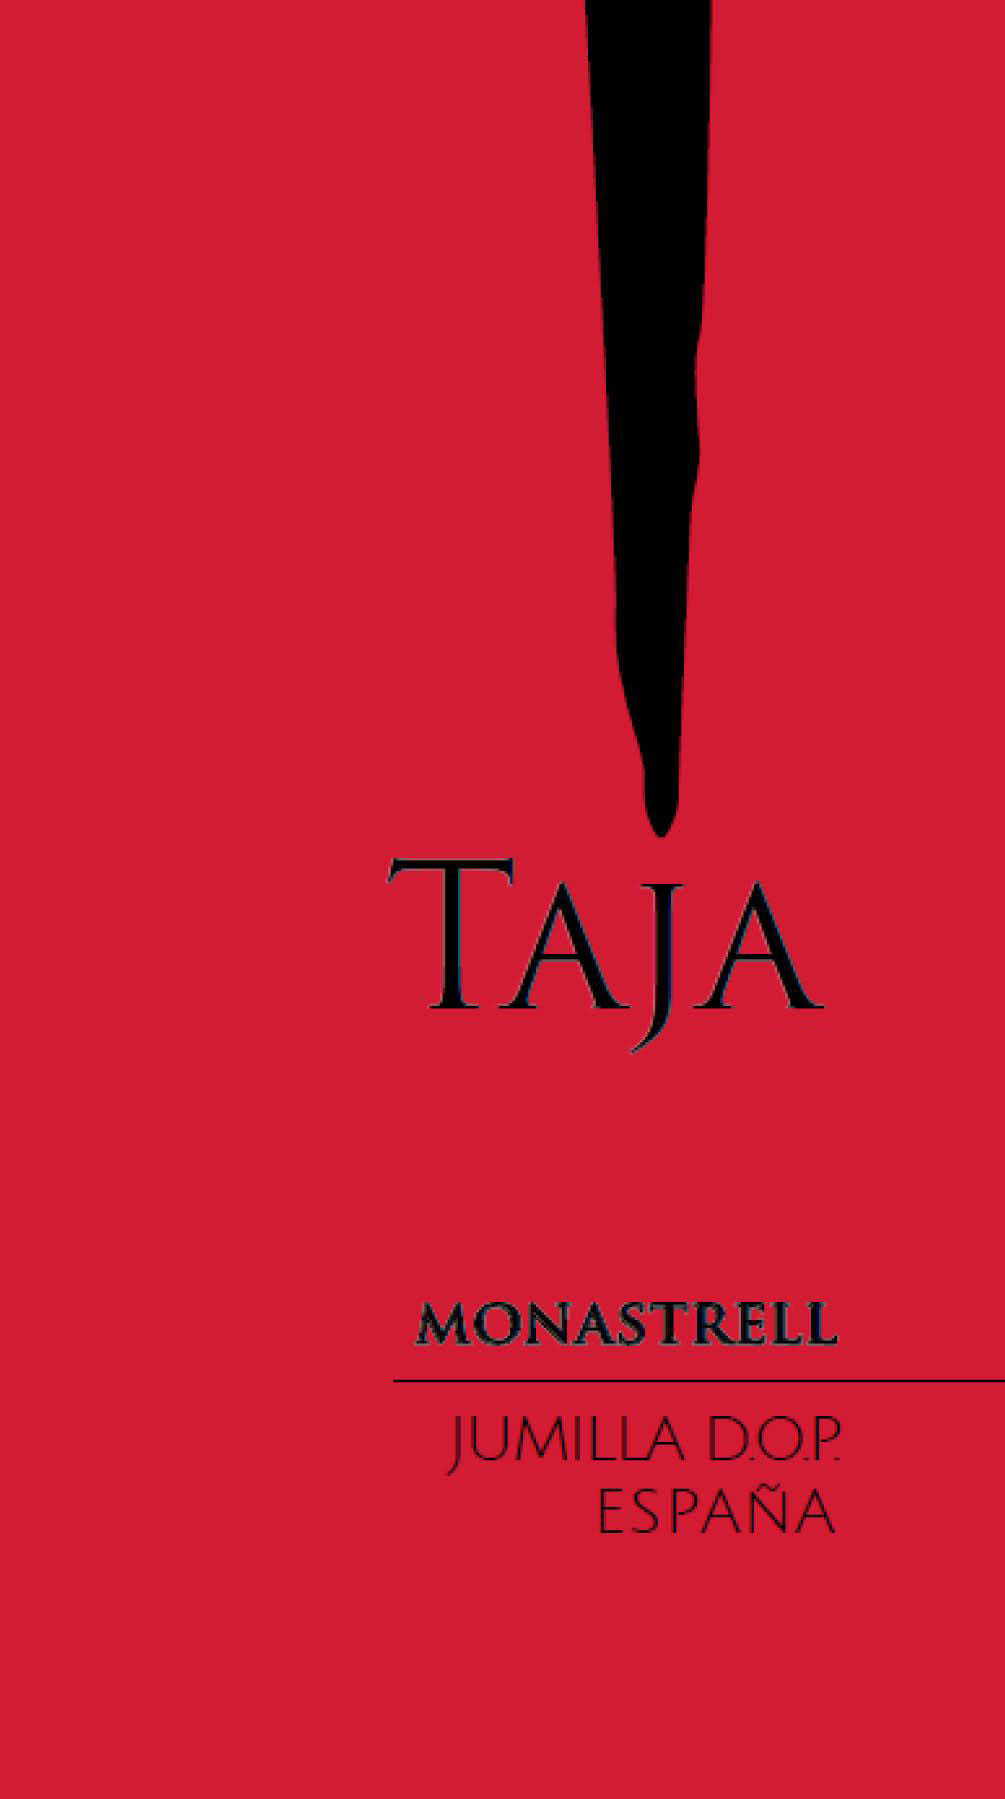 Taja - Monastrell label